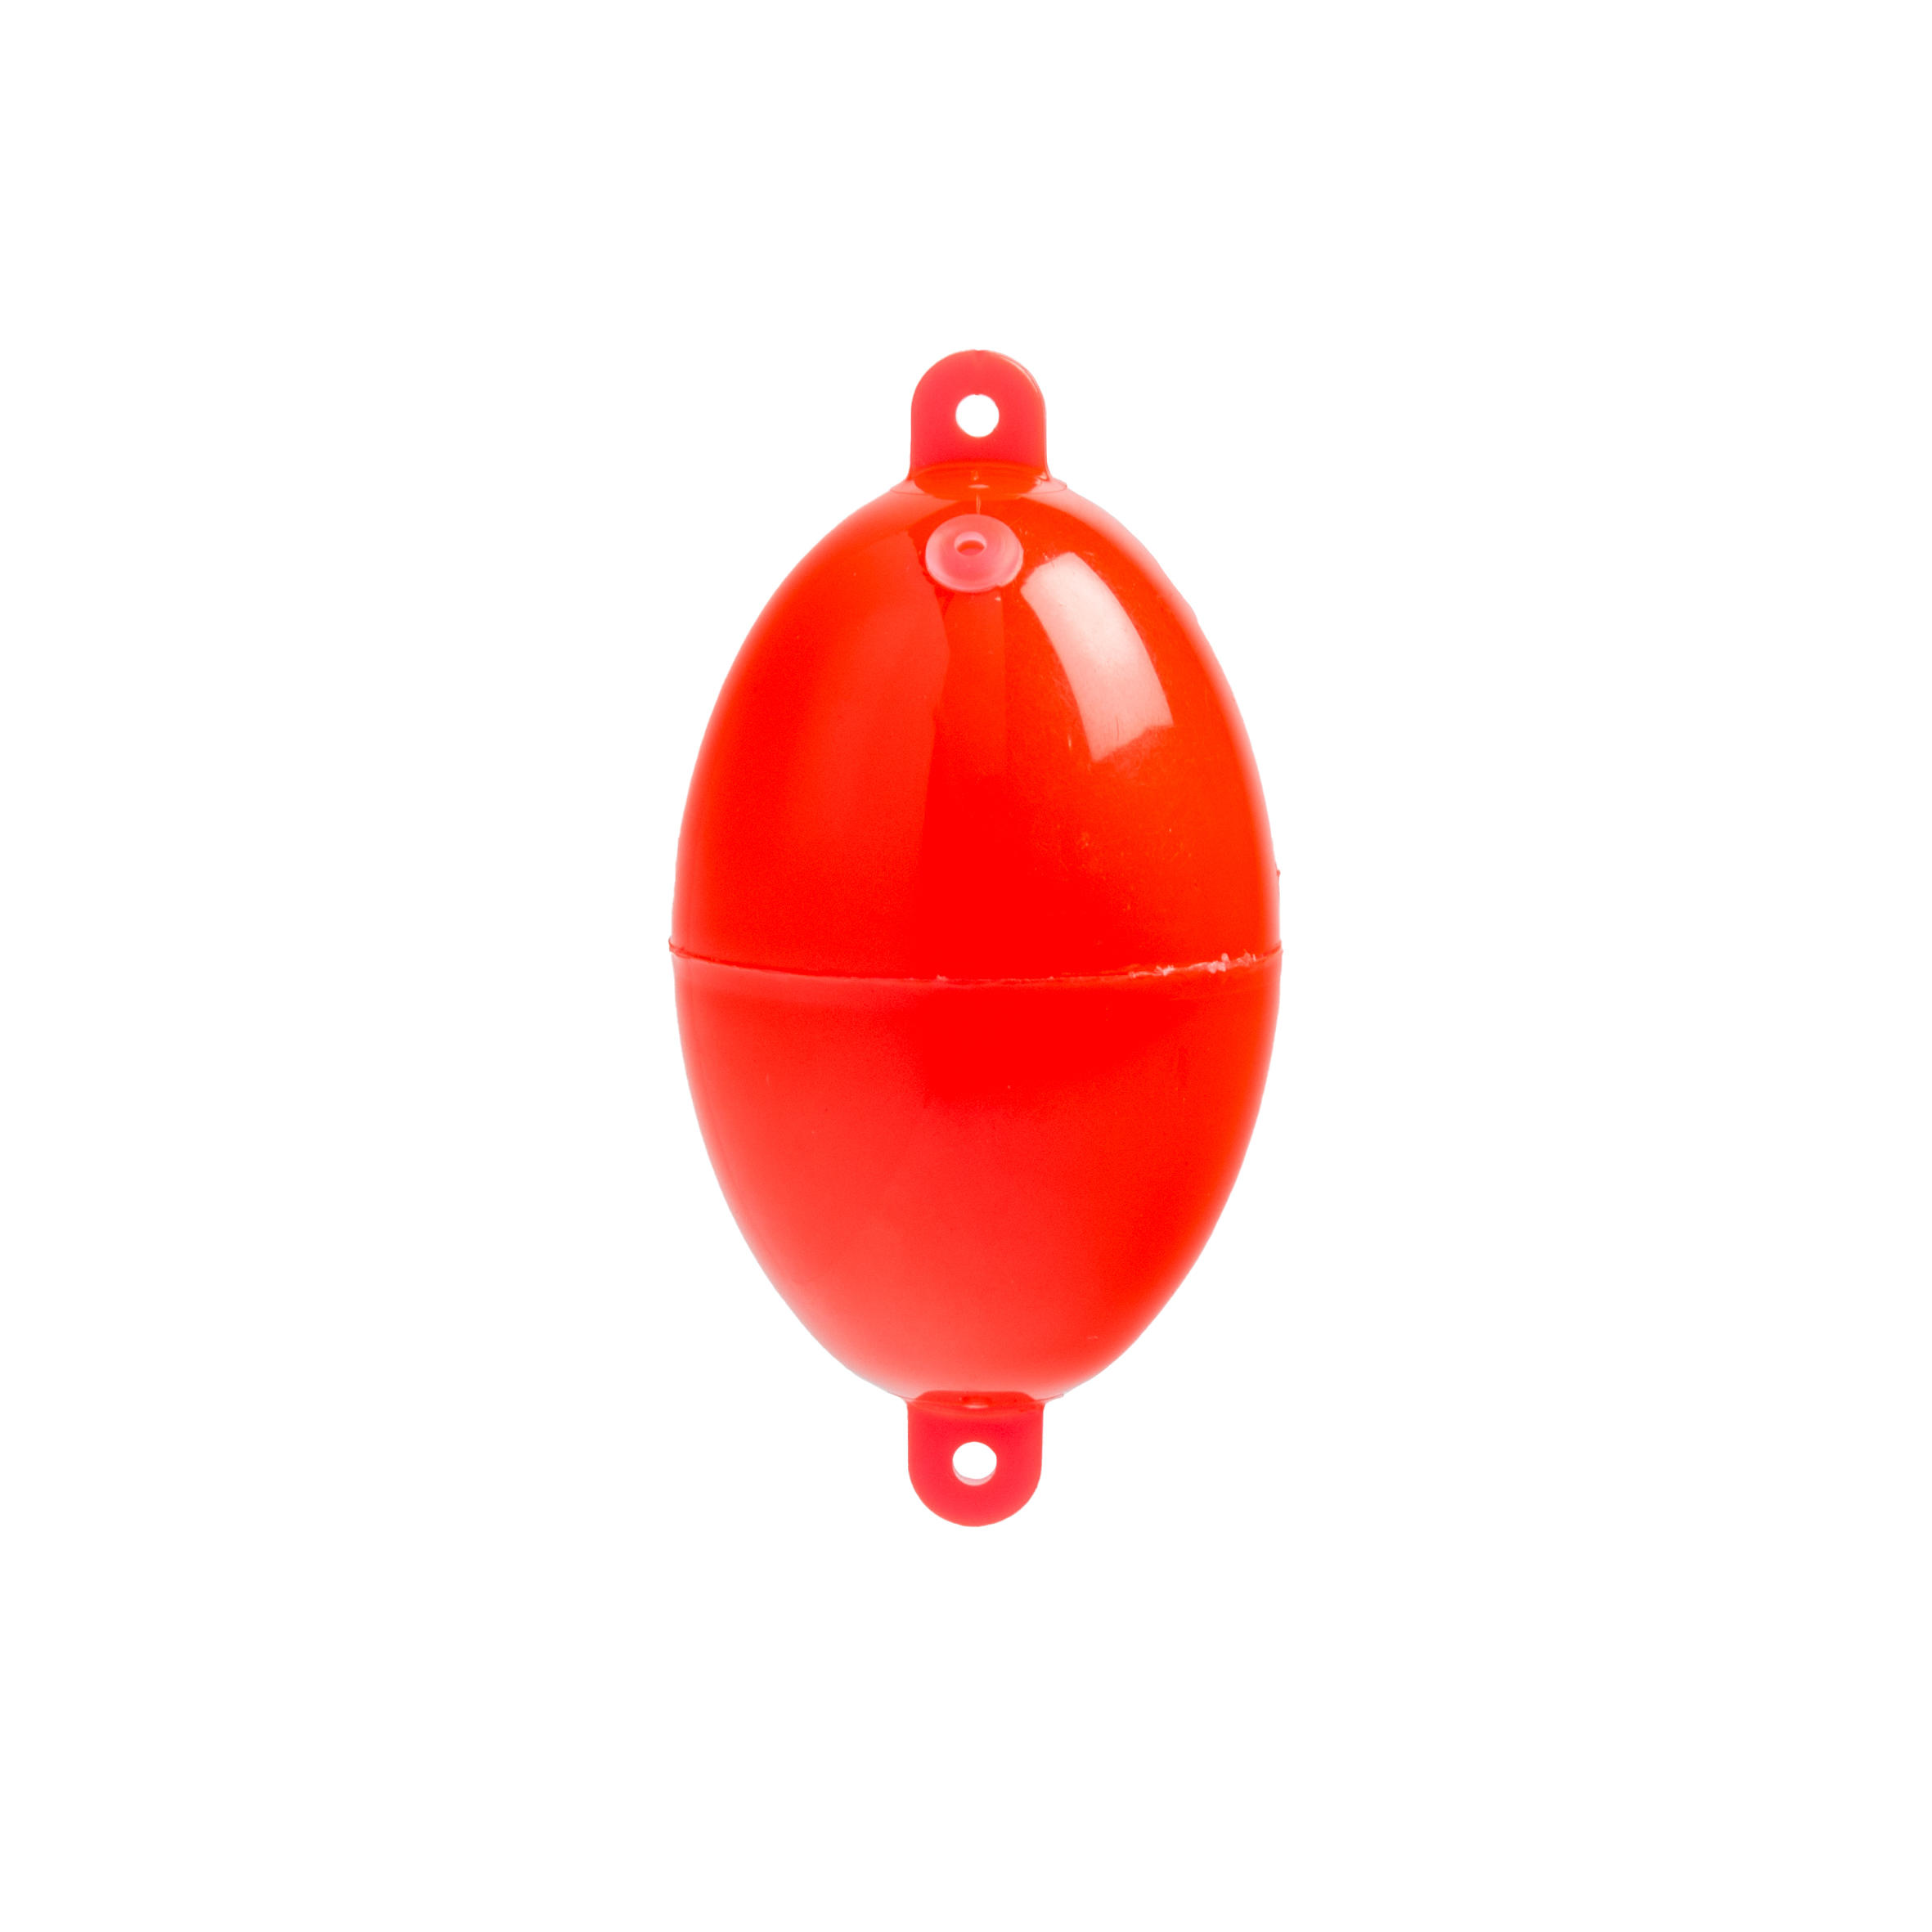 Oval Buldo N°4 x3 sea fishing bubble float red 2/3